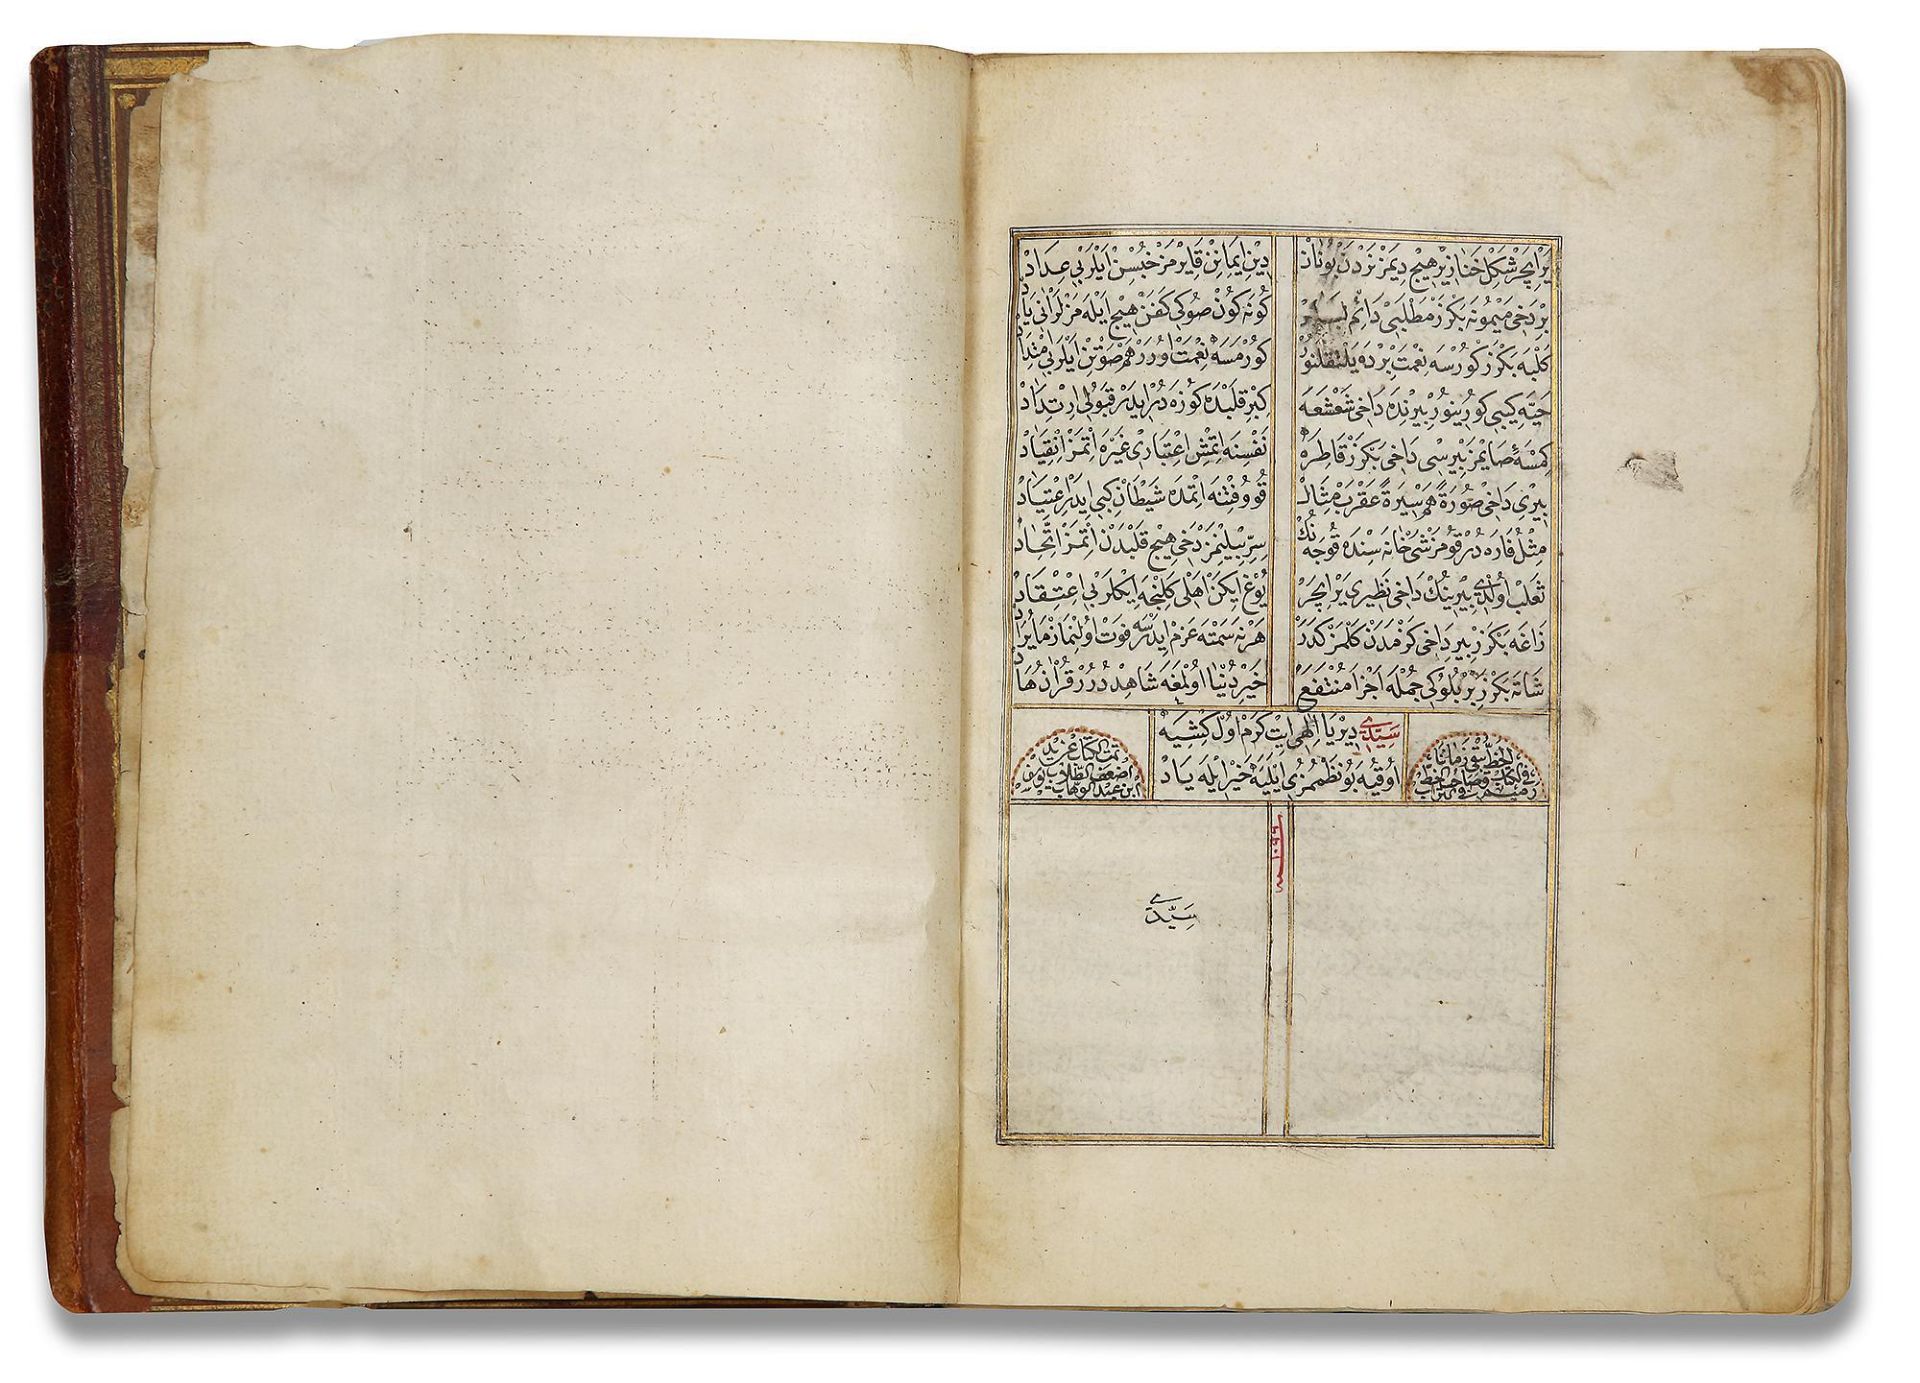 AN OTTOMAN MANUSCRIPT COPIED BY YUSUF IBN ABD AL-WAHHAB 1099 AH/1688 AD - Image 9 of 16